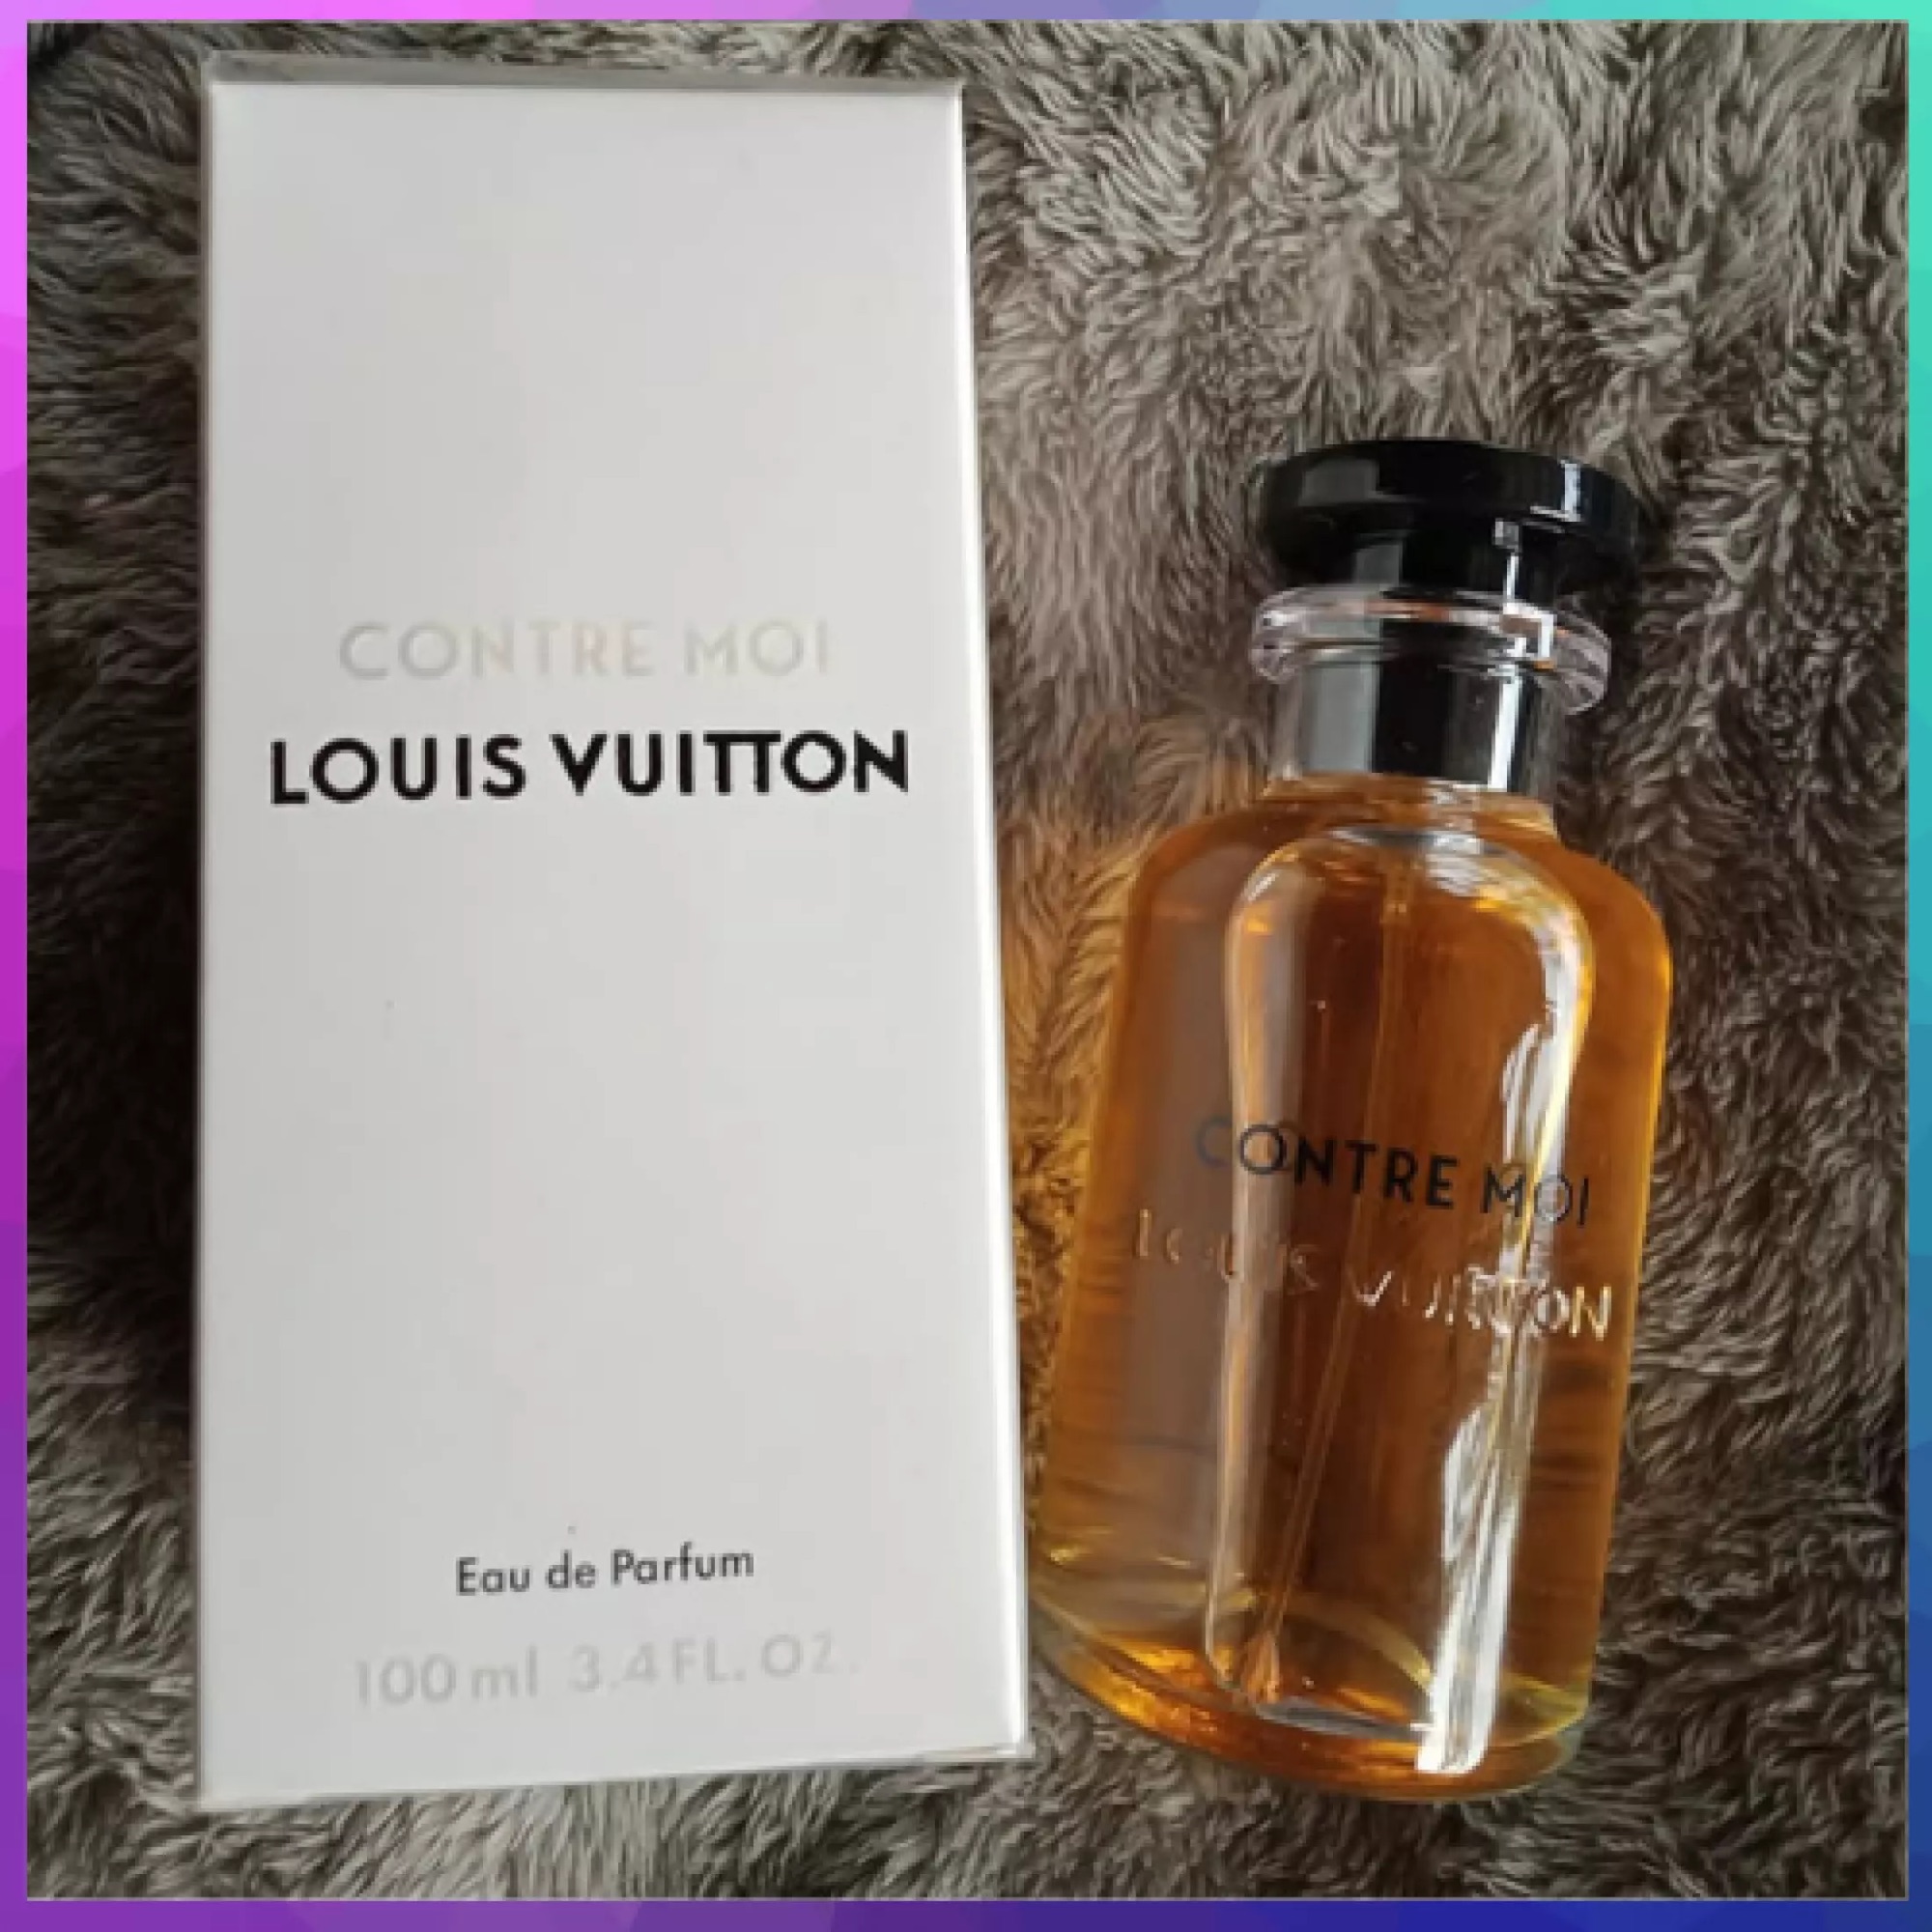 Louis Vuitton Mille Feux Eau De Parfum 100ml, Beauty & Personal Care,  Fragrance & Deodorants on Carousell